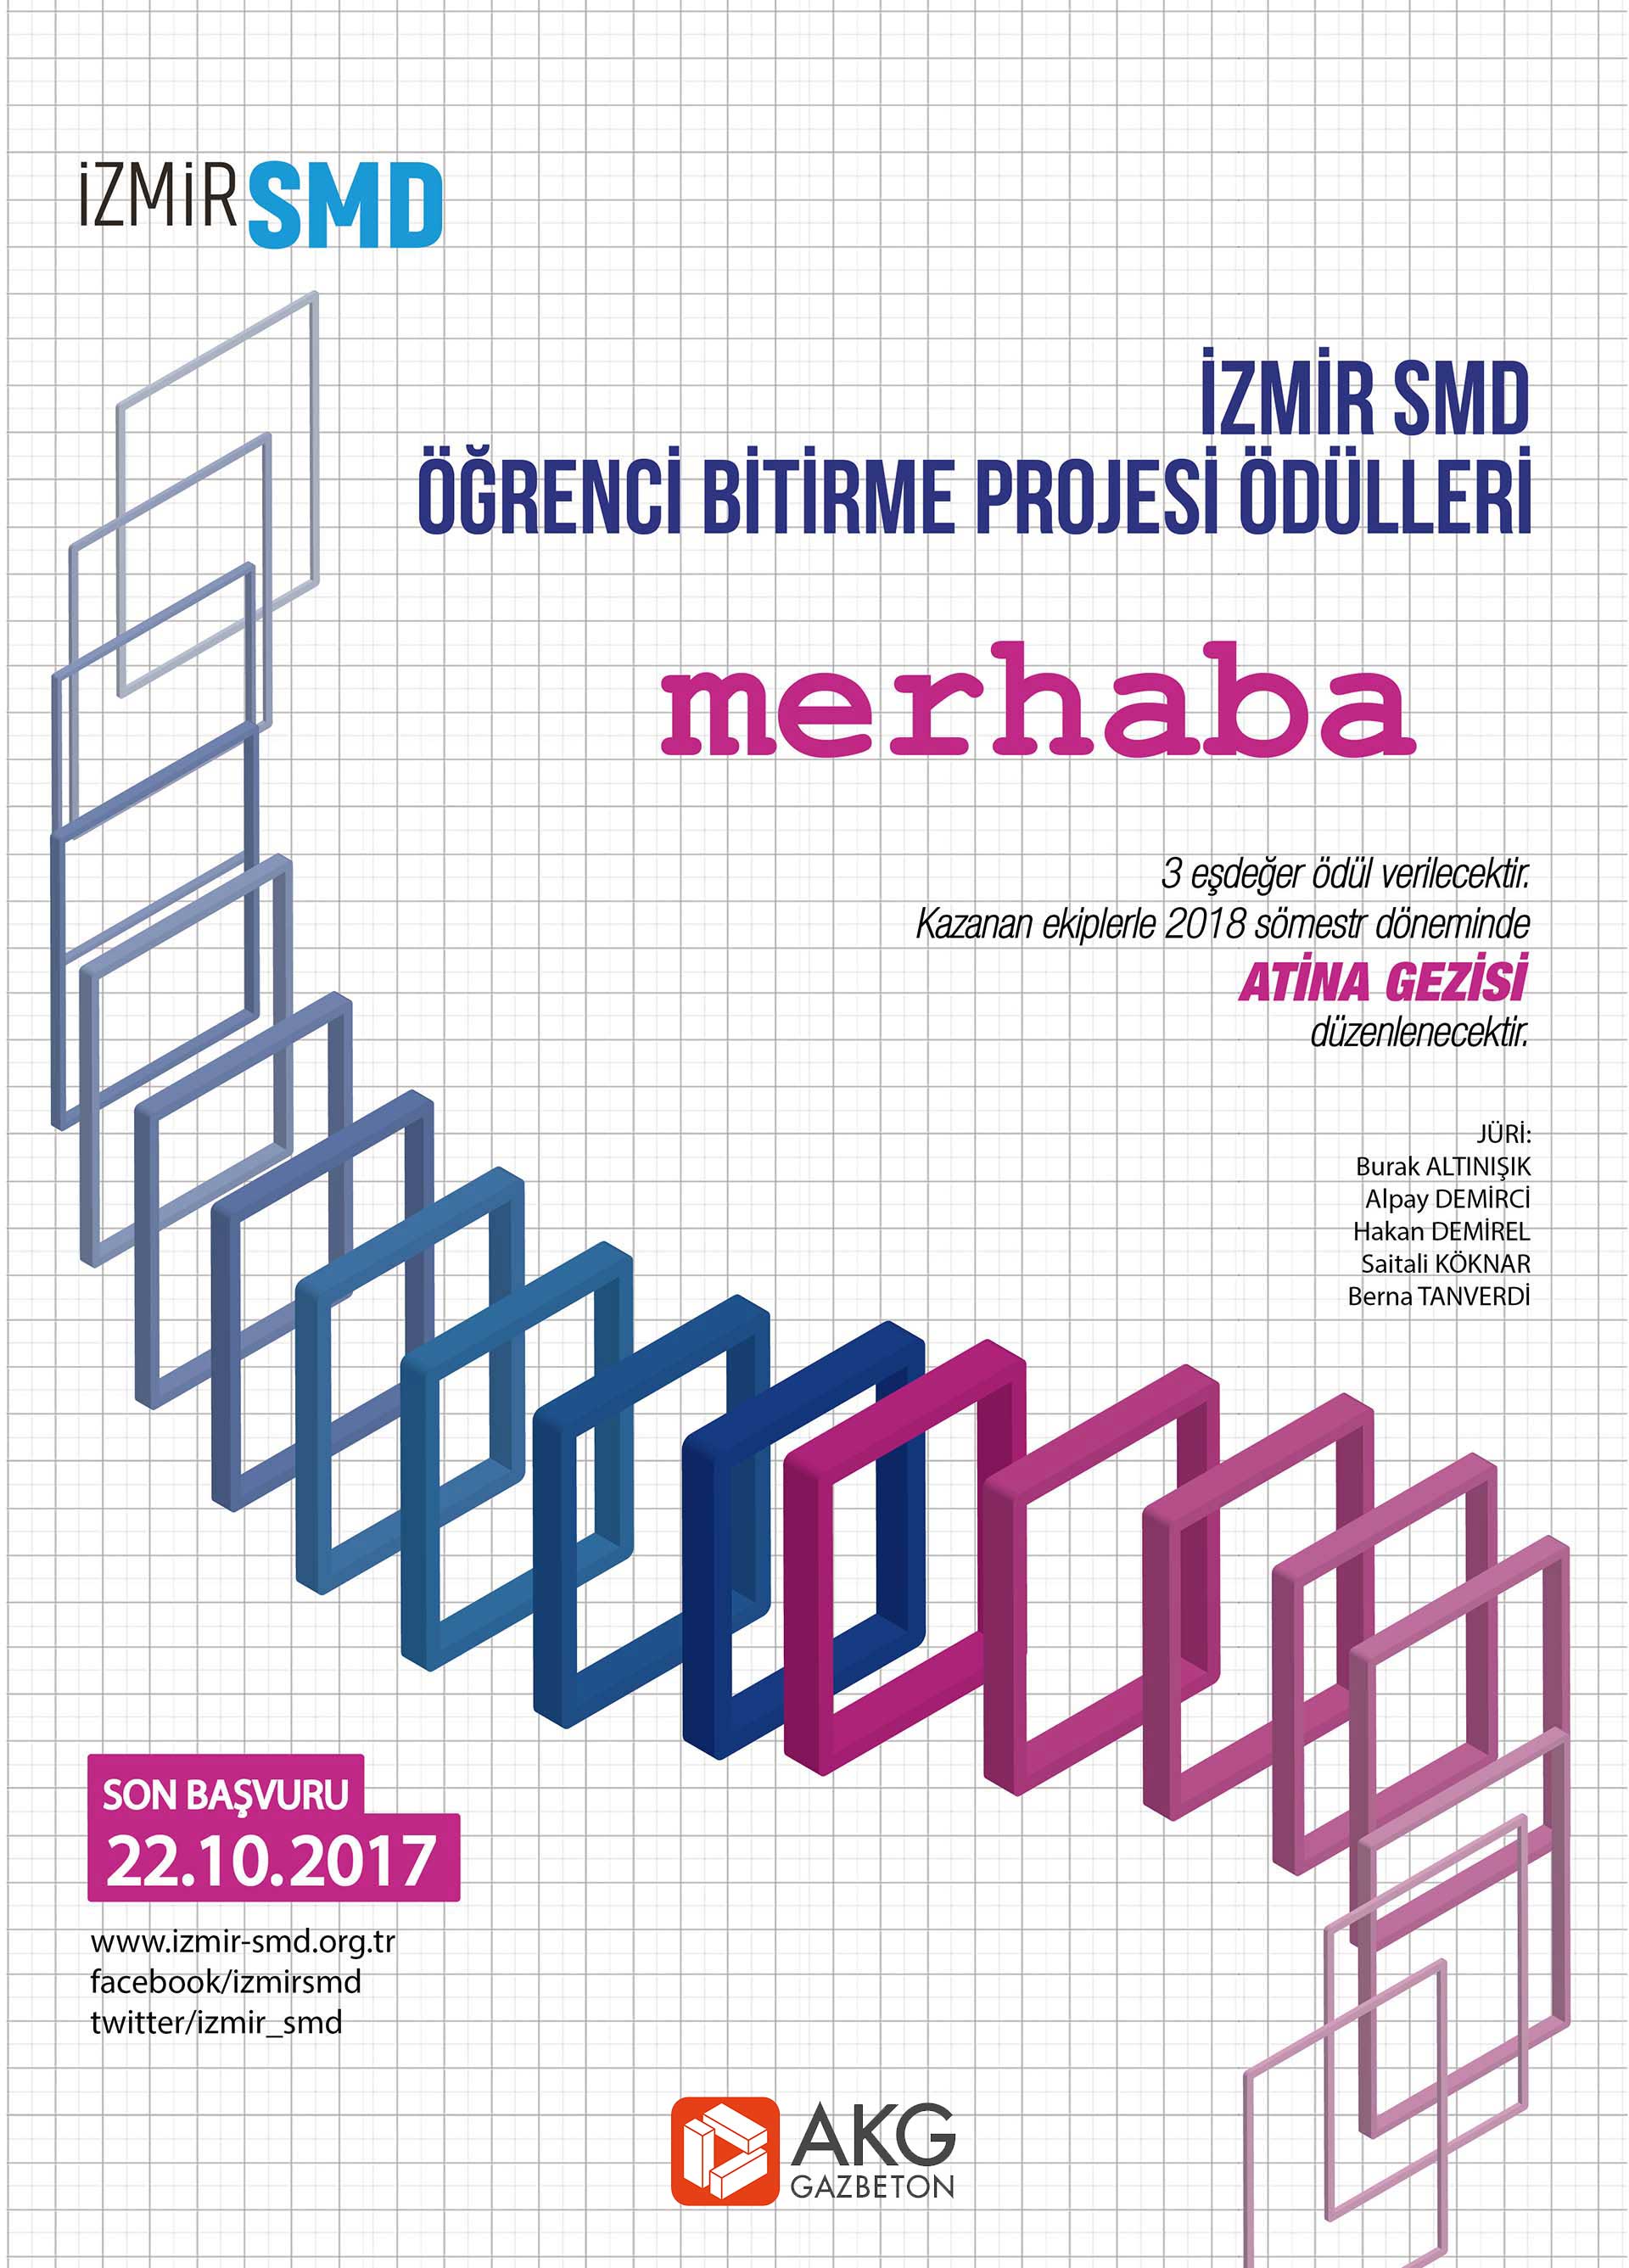 İzmirSMD'nin AKG Gazbeton sponsorluğunda düzenlediği MERHABA - İzmirSMD Öğrenci Bitirme Projesi Ödülü 2017'yi Kazanan Projeler Belli Oldu.